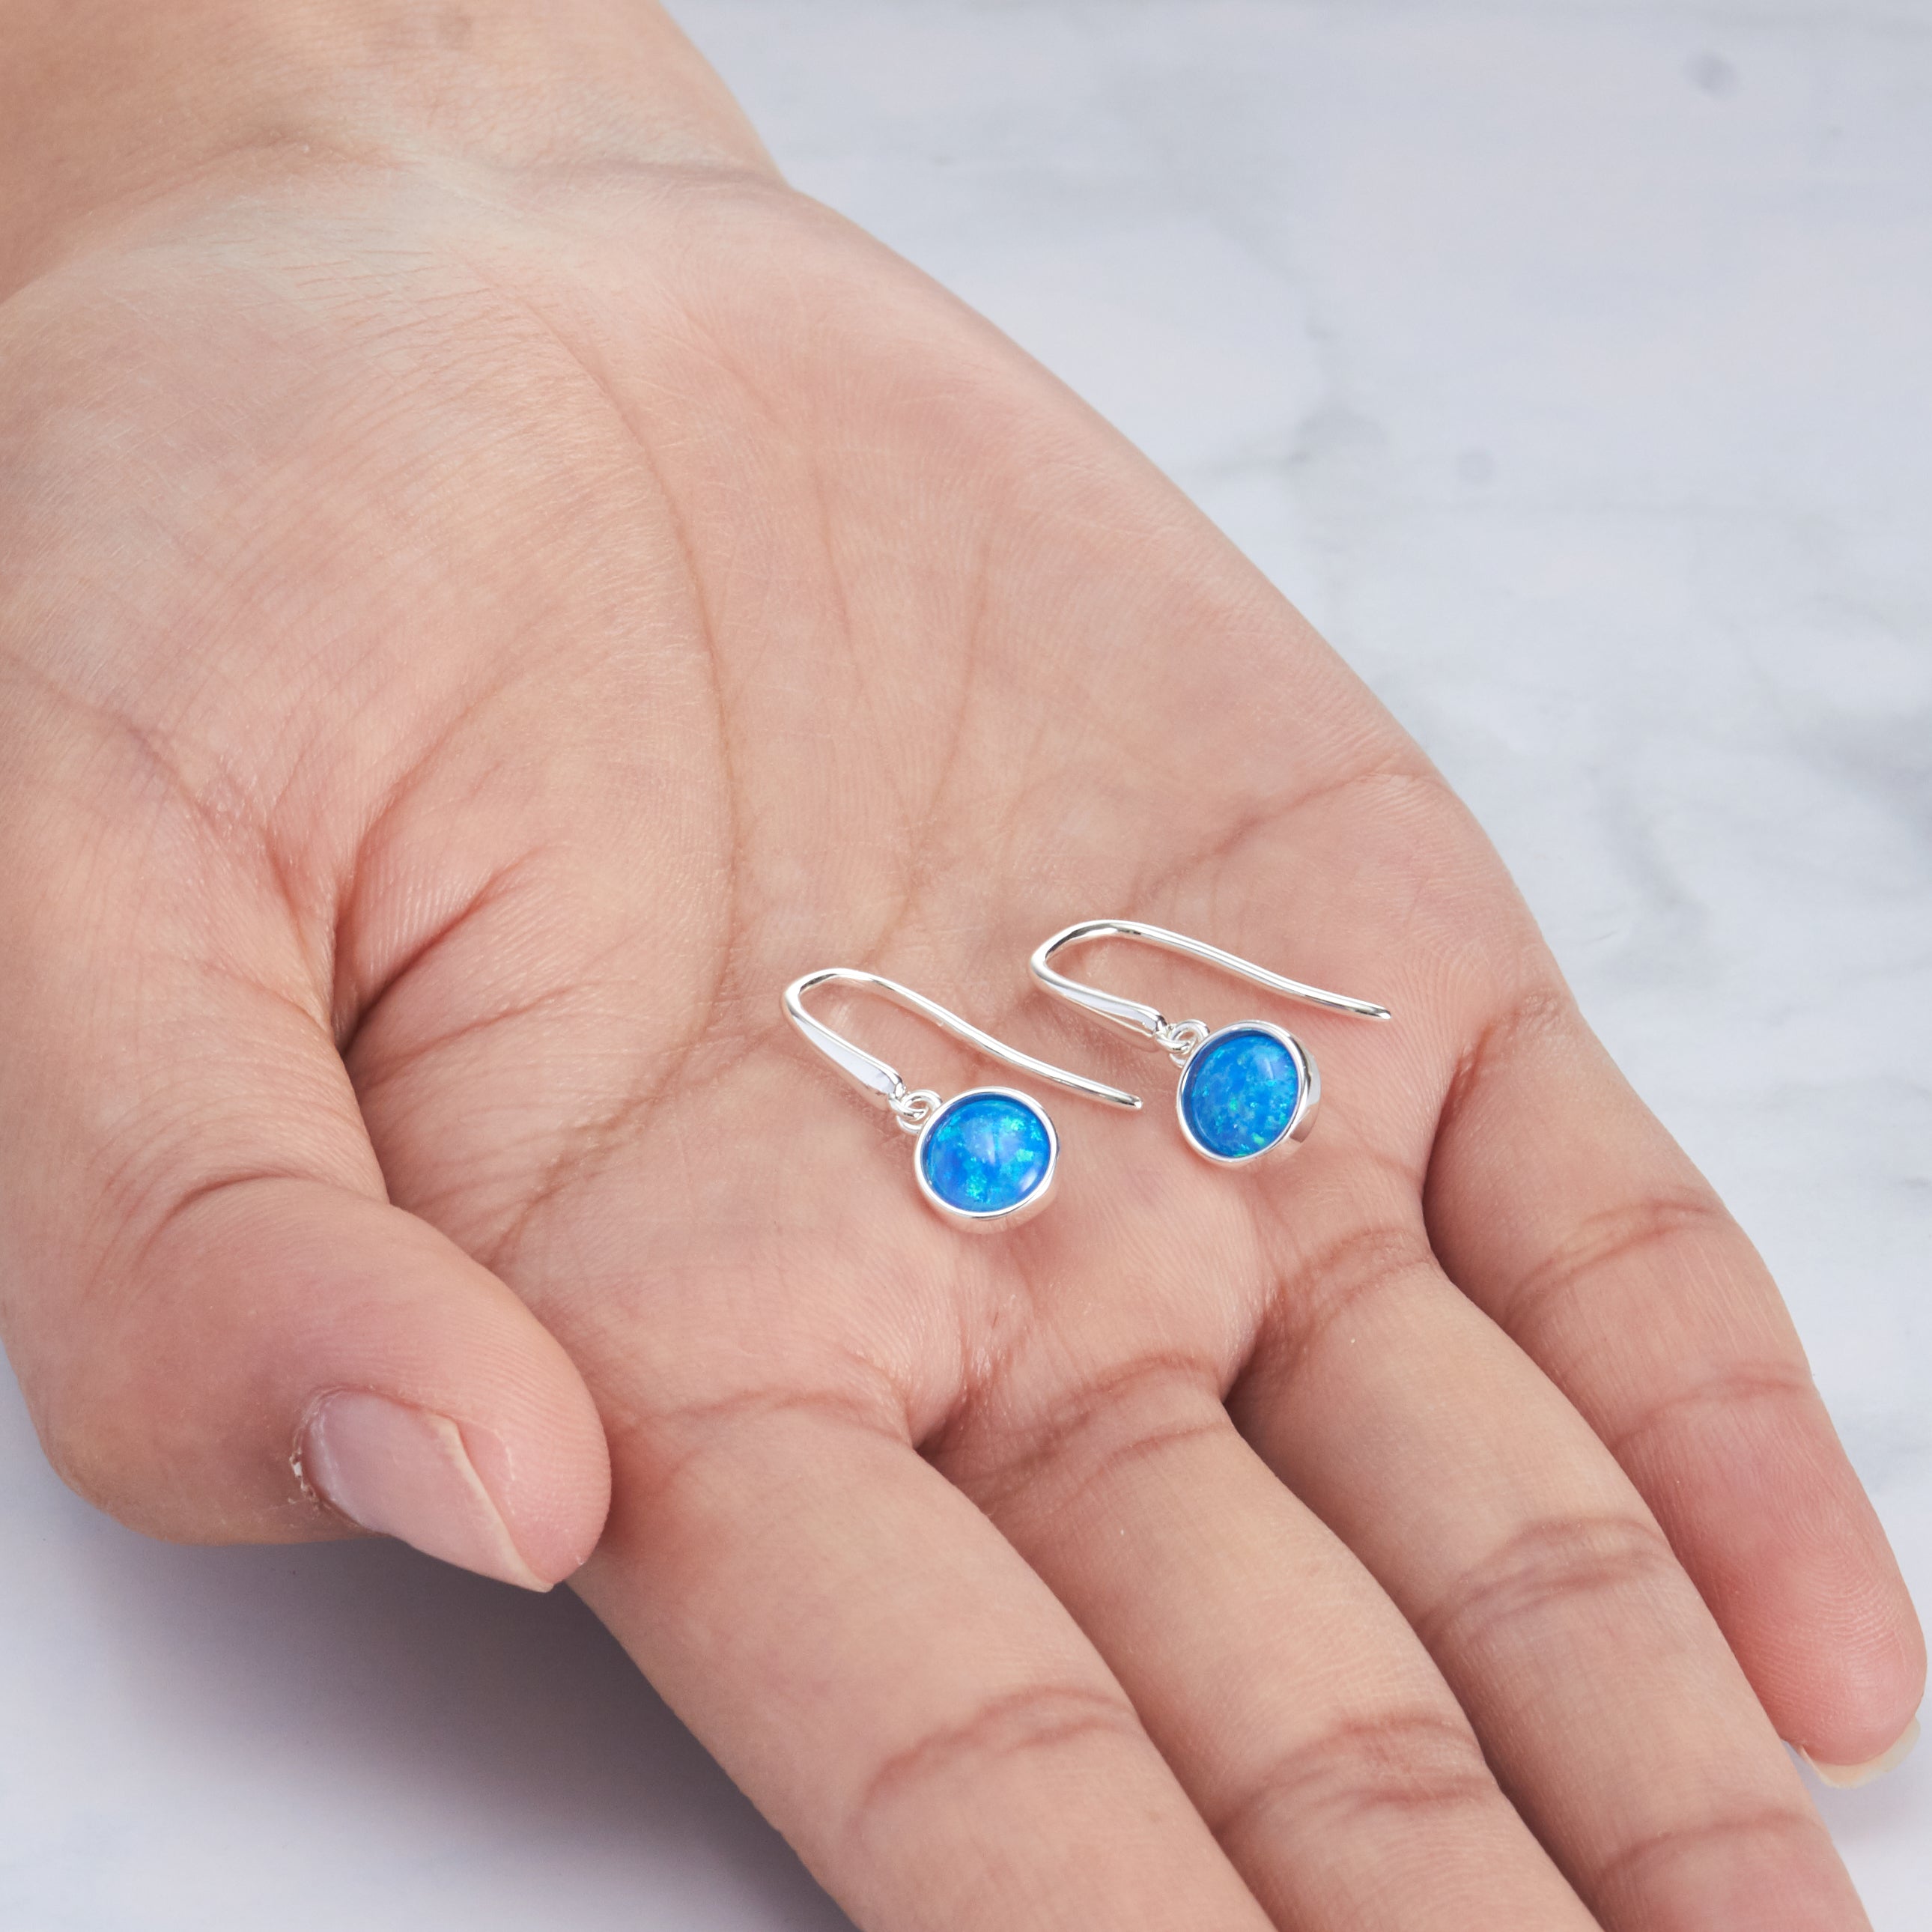 Buy 14K Gold Blue Opal Teardrop Earrings, Gold 7x10mm Blue Opal Gemstone Dangle  Earrings, October Birthstone, Delicate Earrings, Dainty Jewelry Online in  India - Etsy